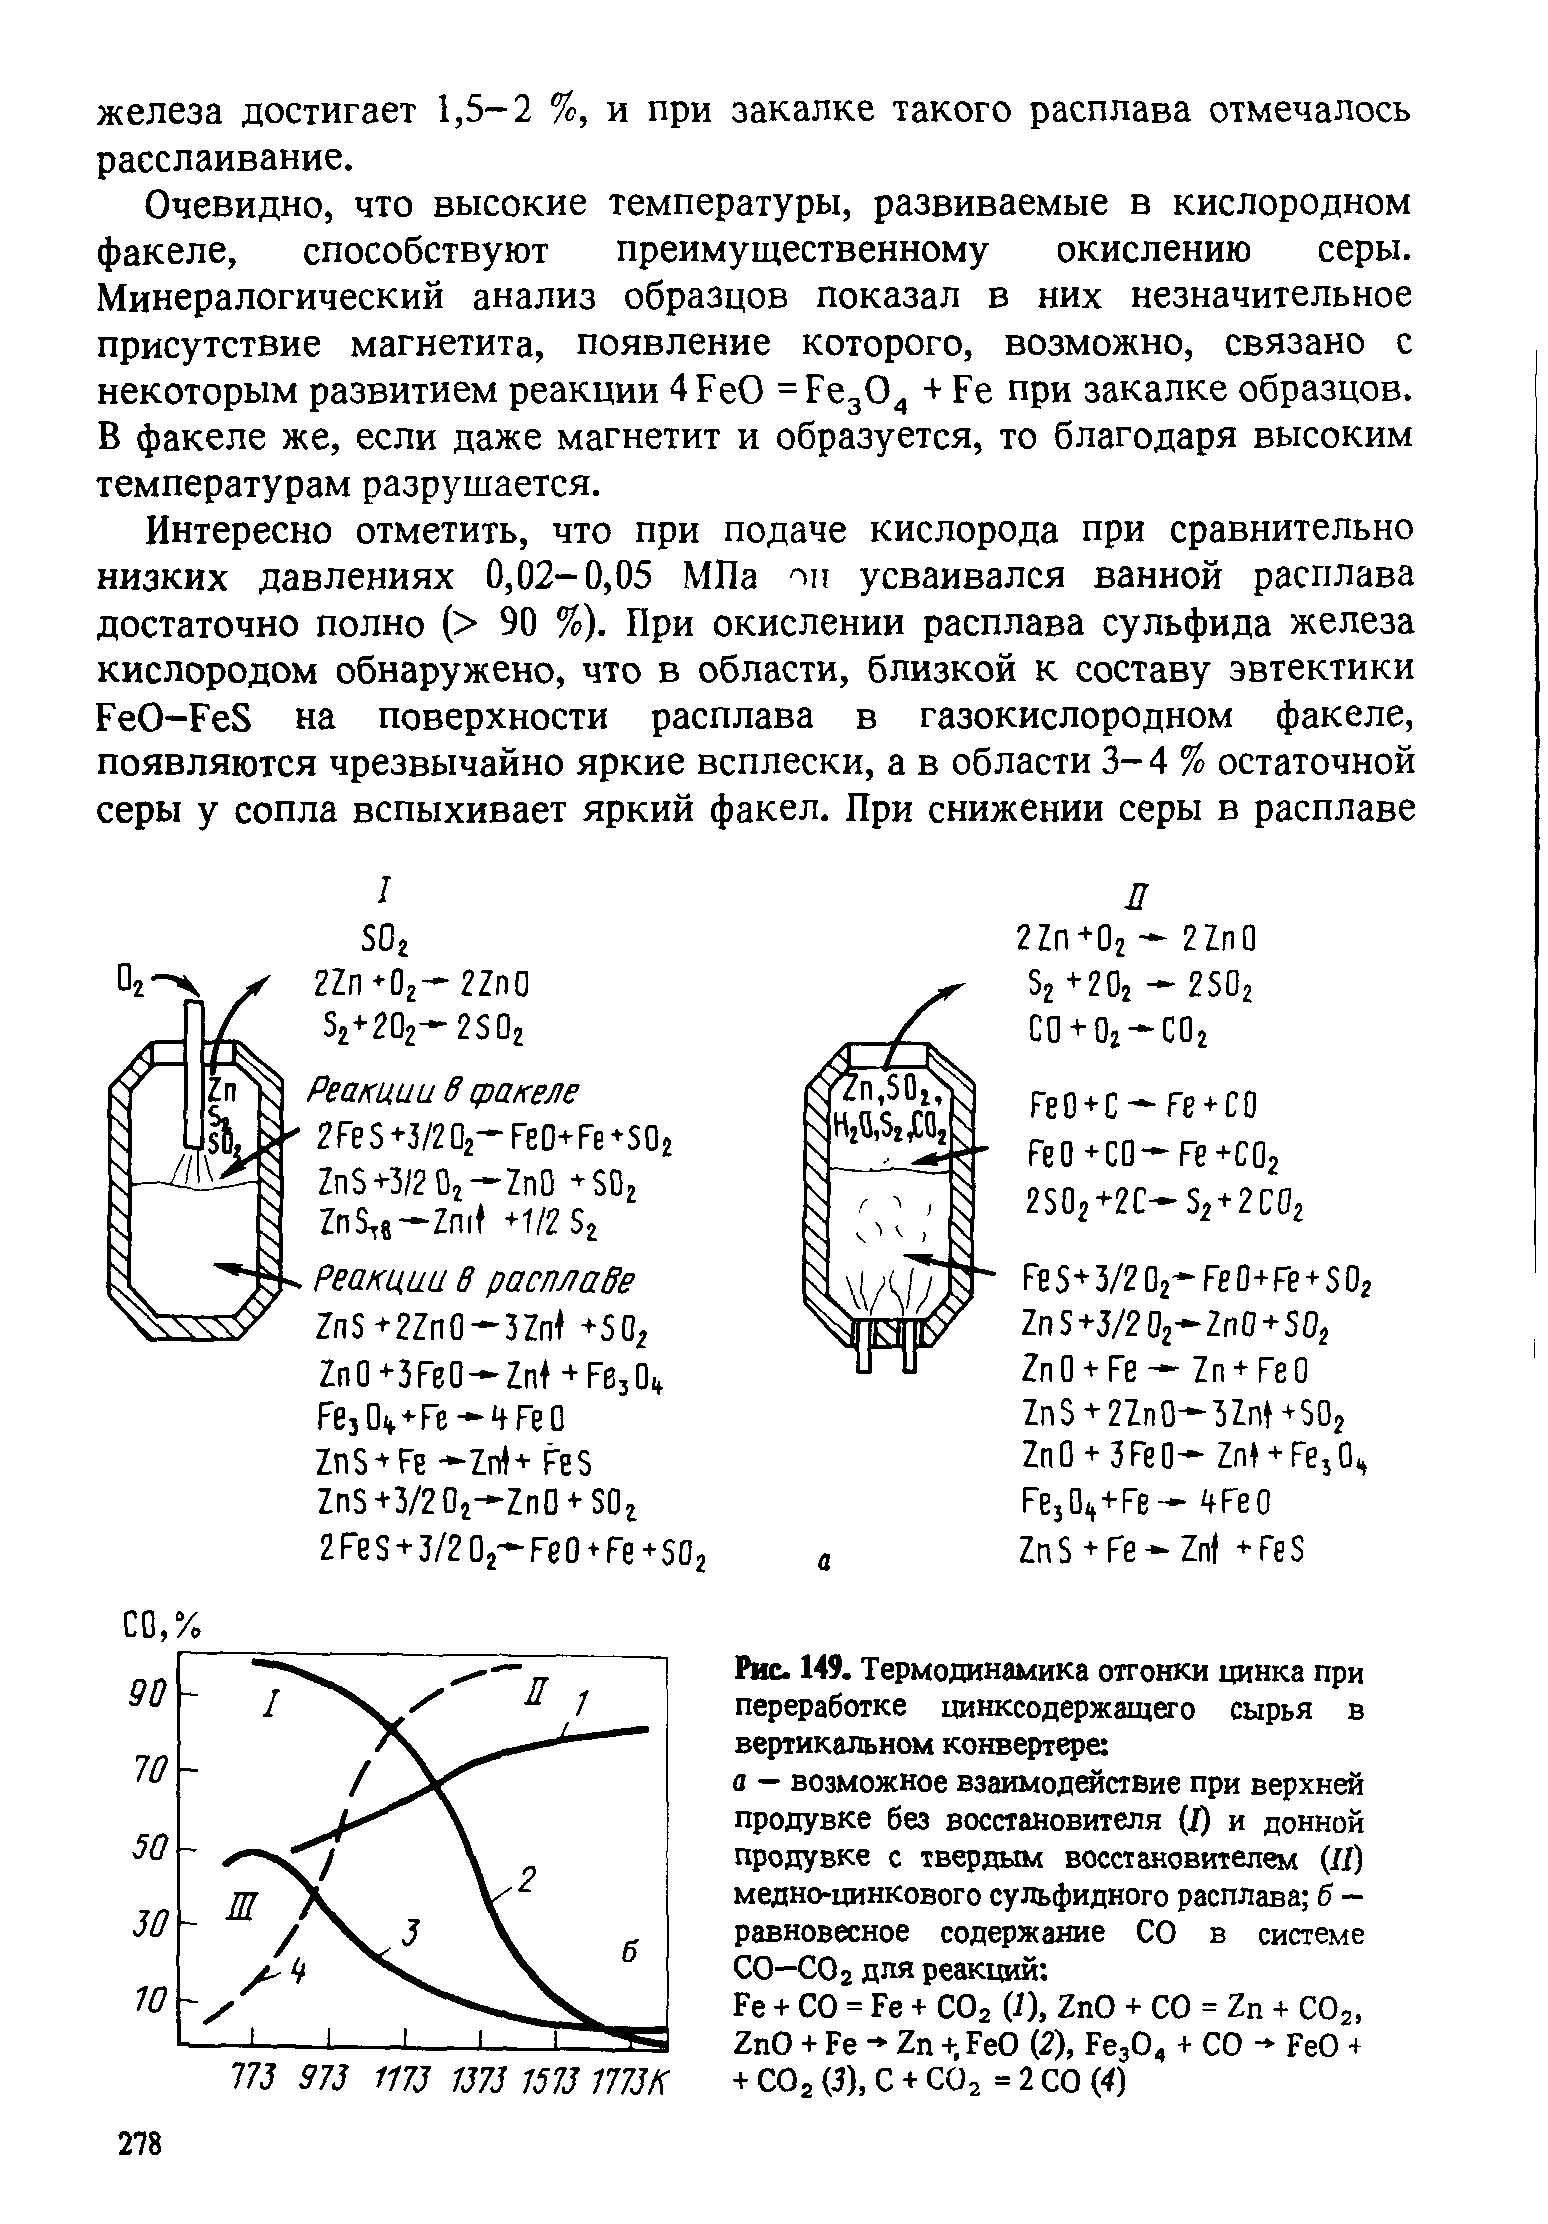 Рис. 149. Термодинамика отгонки цинка при переработке цинксодержащего сырья в <a href="/info/118261">вертикальном конвертере</a> а — возможное взаимодействие при верхней продувке без восстановителя (J) и донной продувке с твердым восстановителем (Я) медно-цинкового сульфидного расплава б -равновесное содержание СО в системе СО—СО 2 для реакций 
